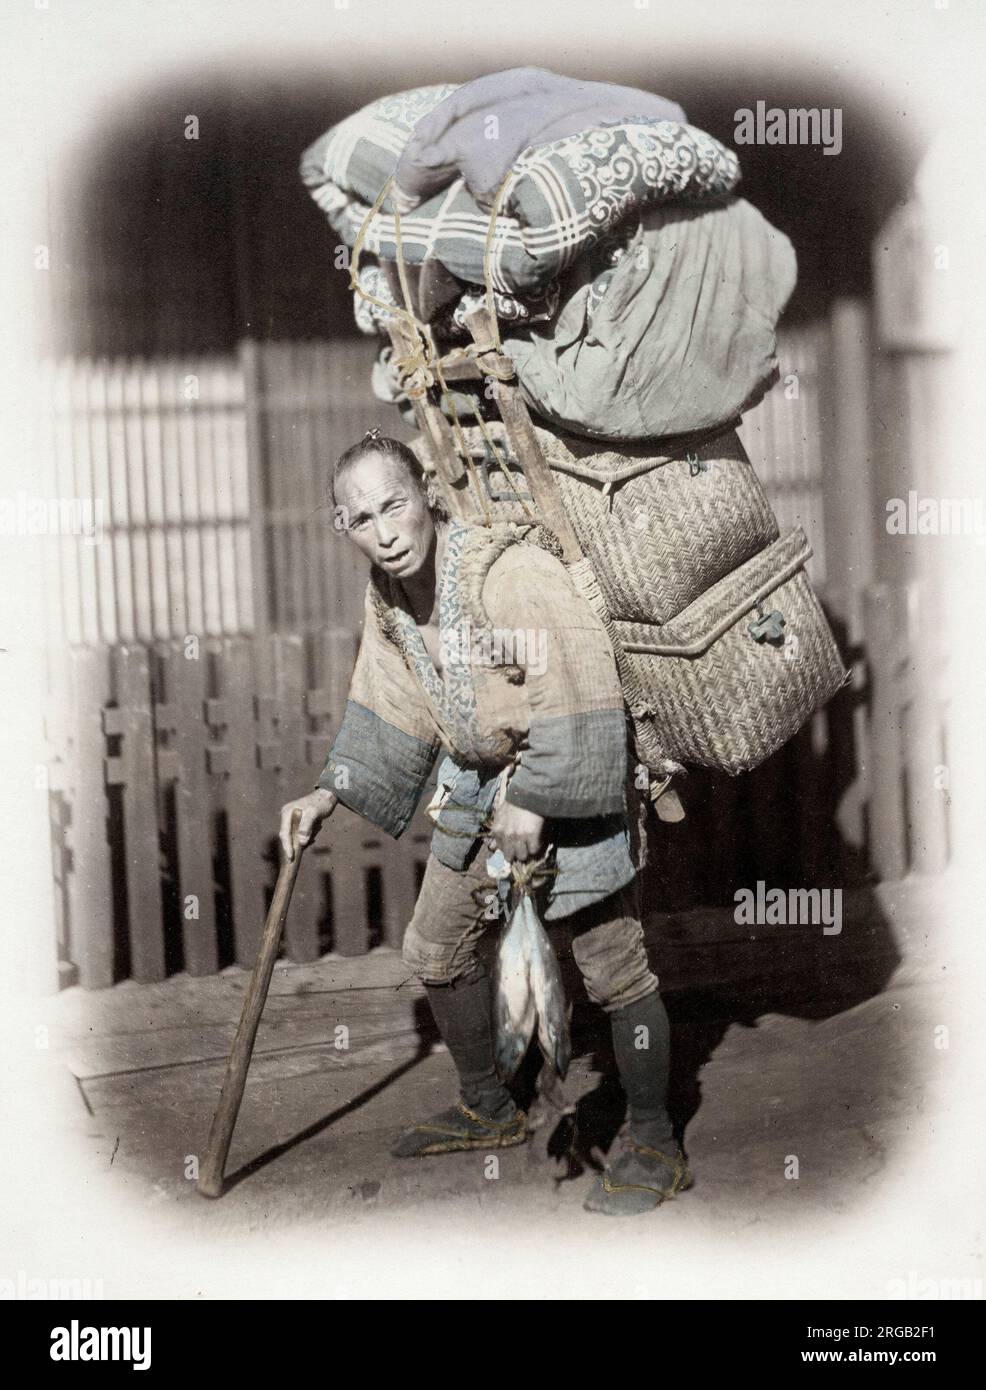 Giappone del 1860 - ritratto di un coolie o di un portiere con un carico pesante Felix o Felix Beato (1832 - 29 gennaio 1909), fotografo italo-britannico che lavora principalmente in India, Giappone, Cina Foto Stock